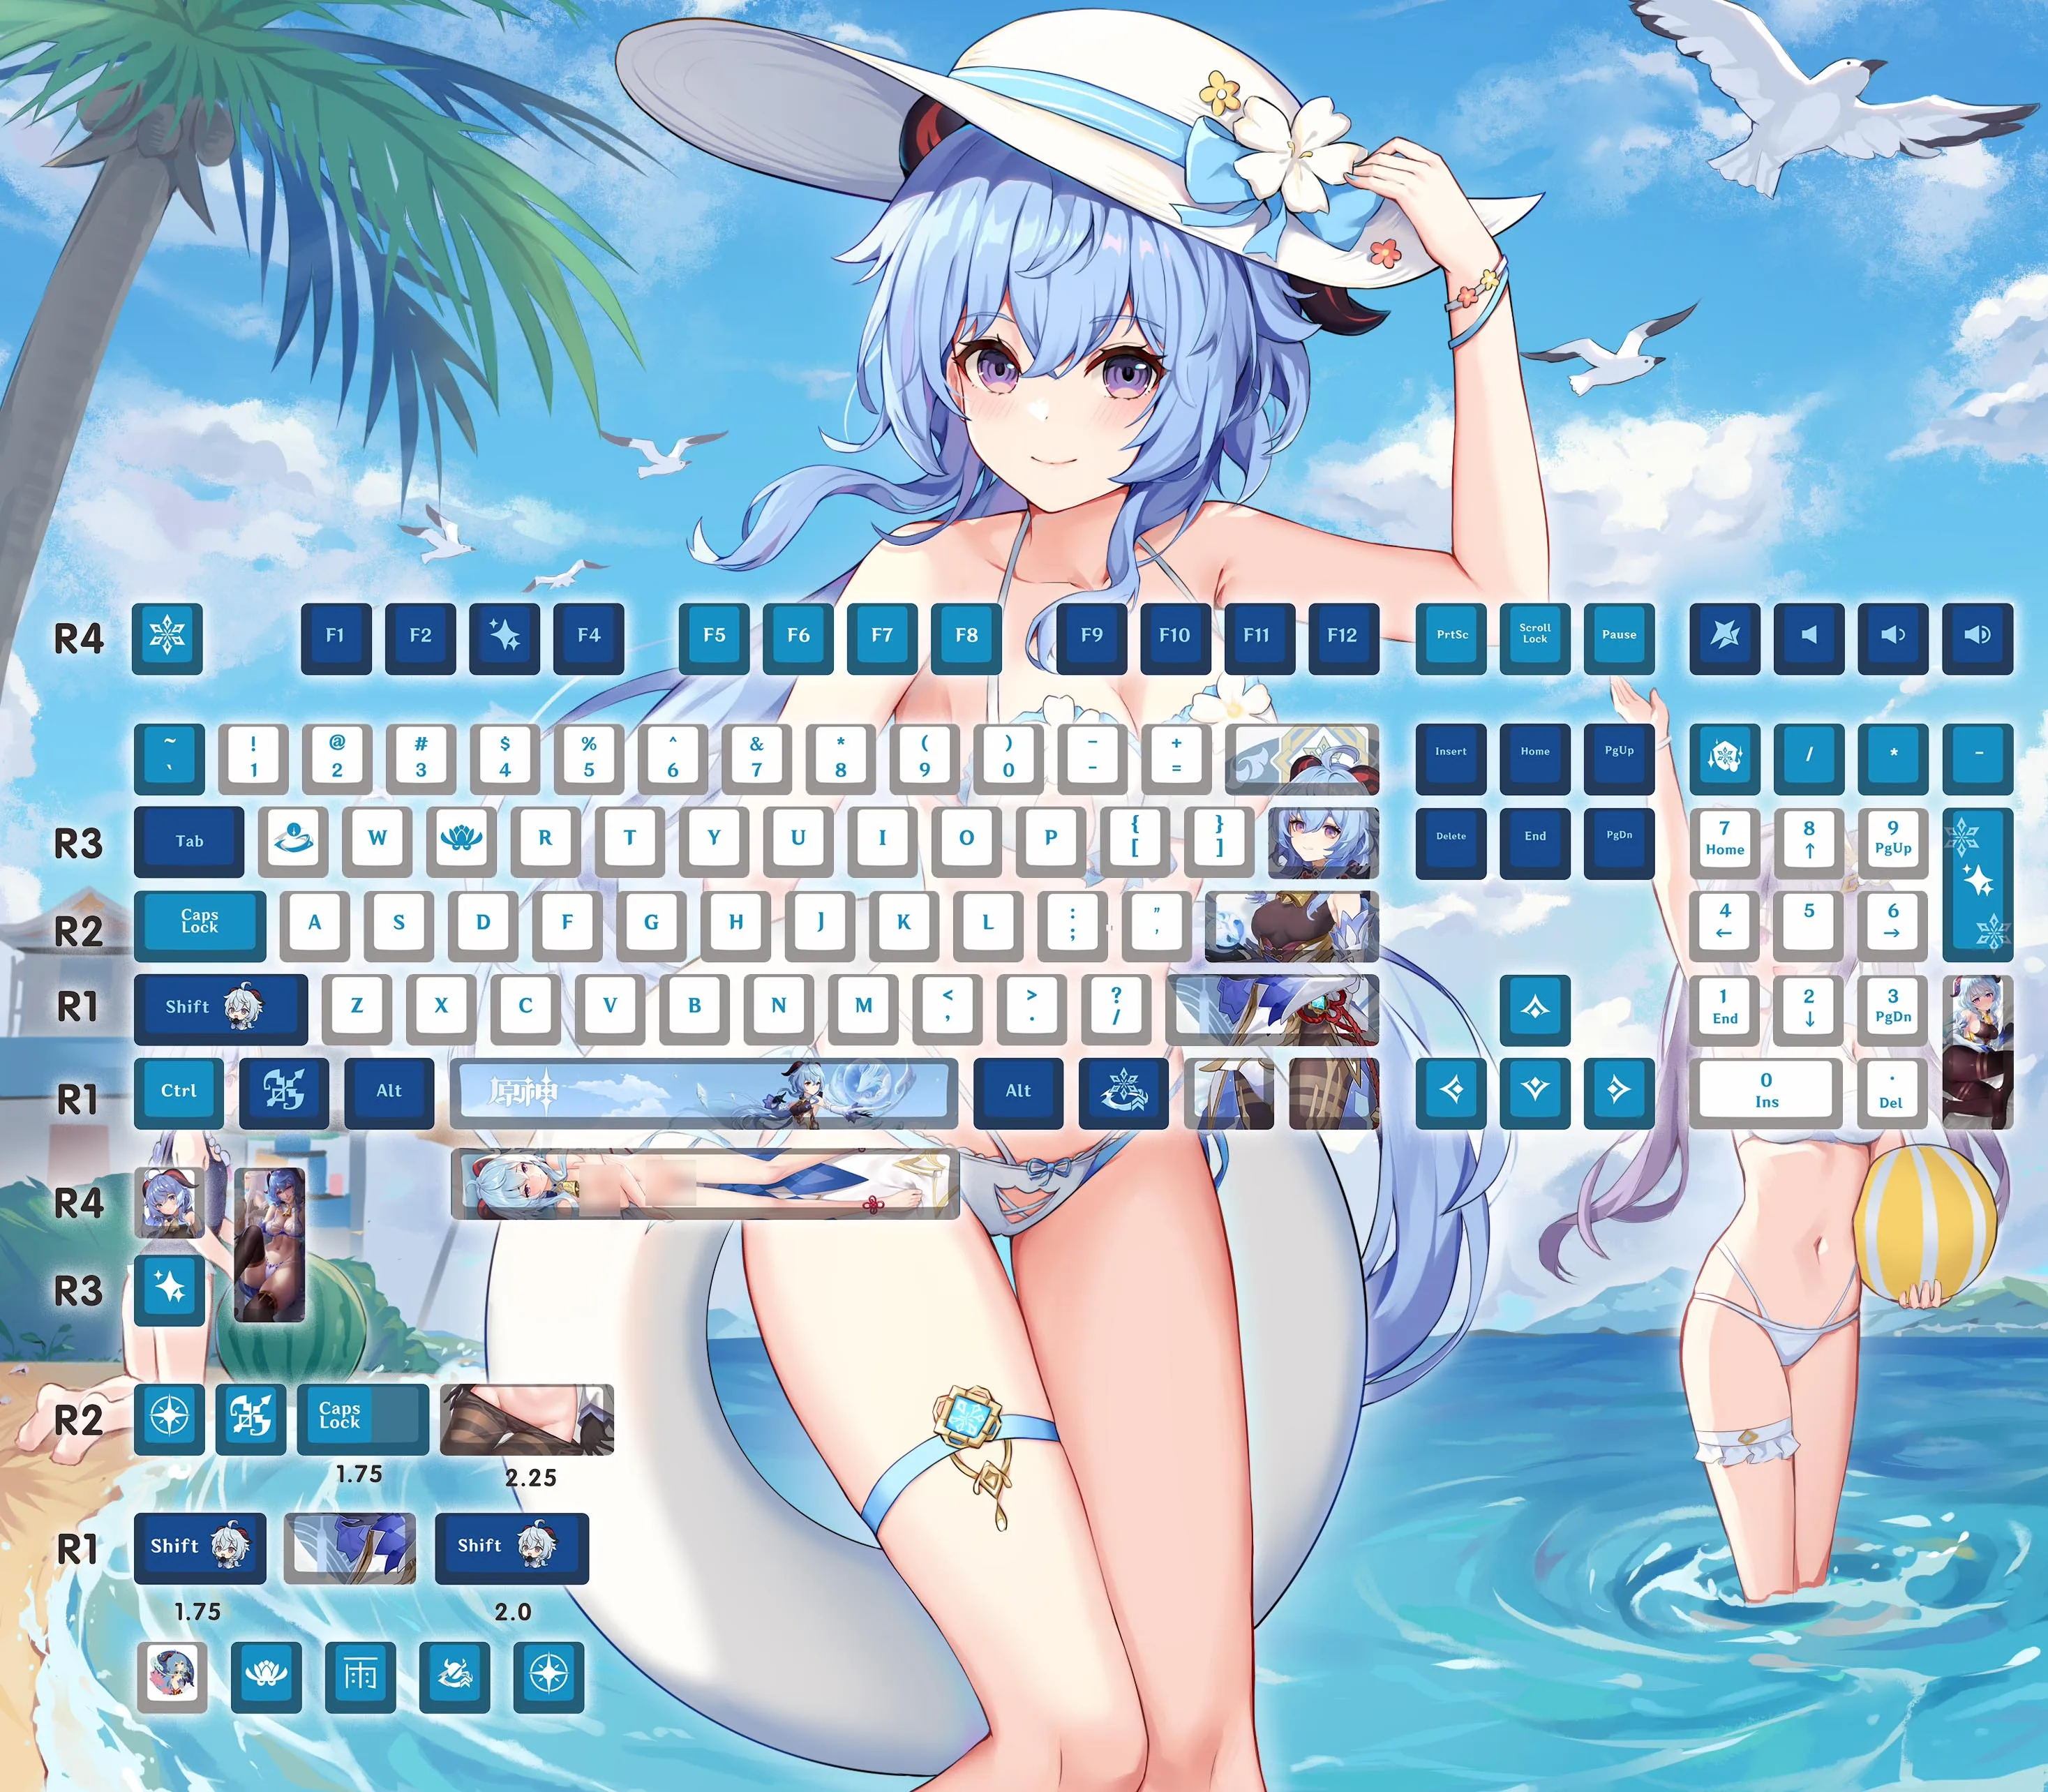 

Клавиатура Механическая Genshin Impact Ganyu, игровая клавиатура с колпачком персонажа, высота вишни, материал PBT, 129 клавиш